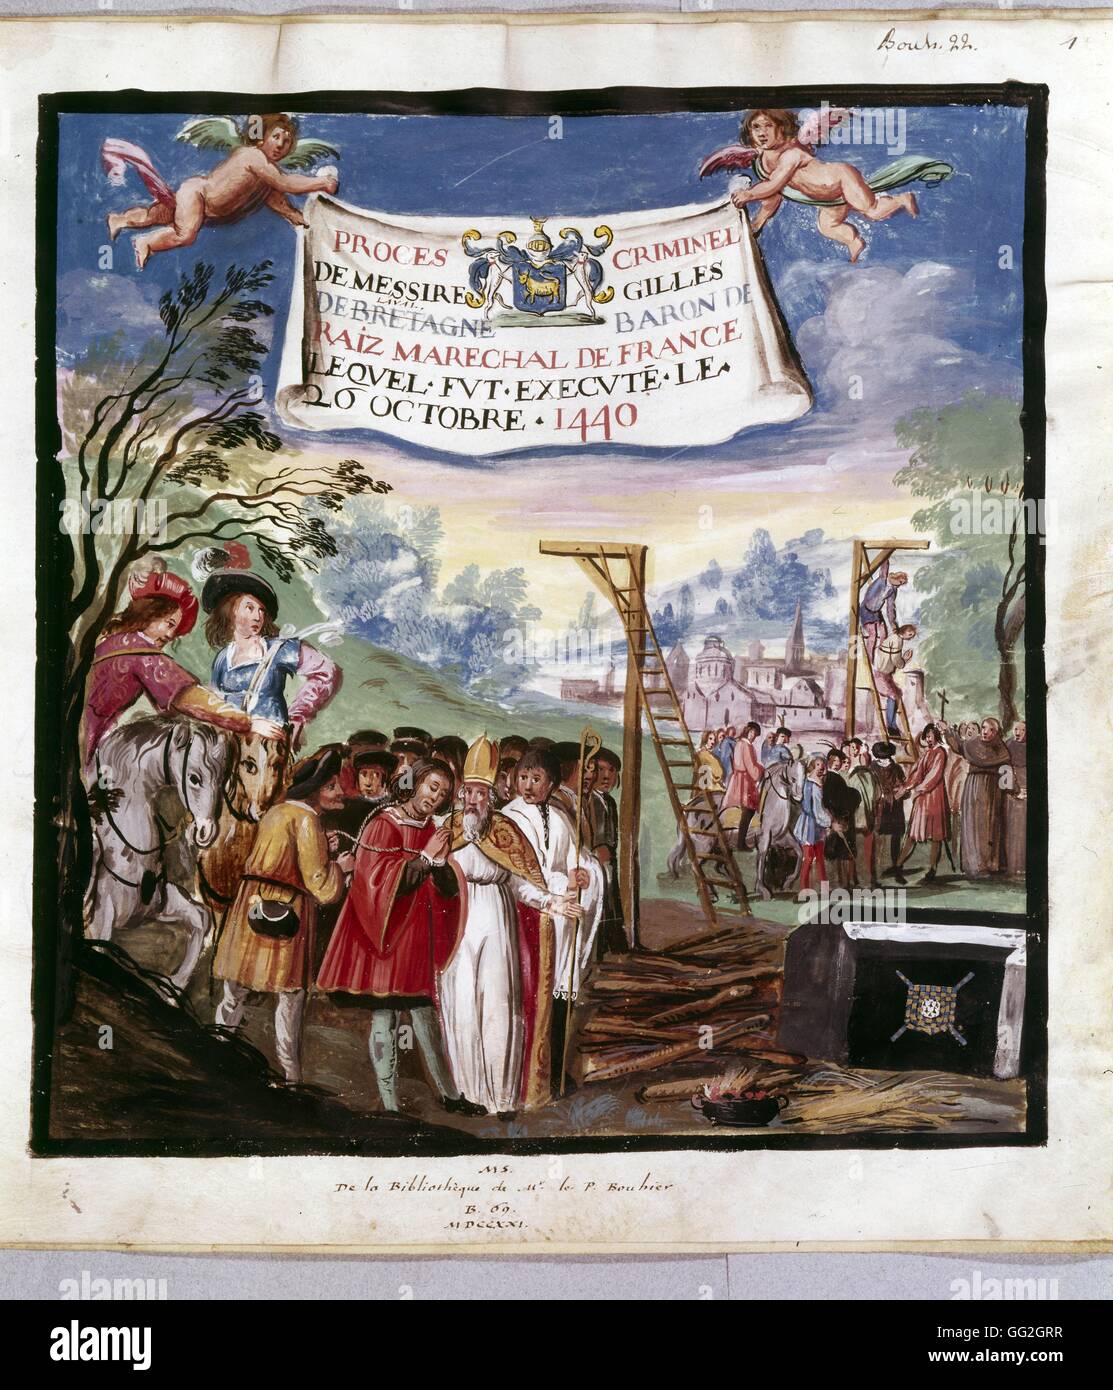 Execution of Gilles de Rais on October 26, 1440 1530 Paris, Bibliothèque Nationale de France Stock Photo